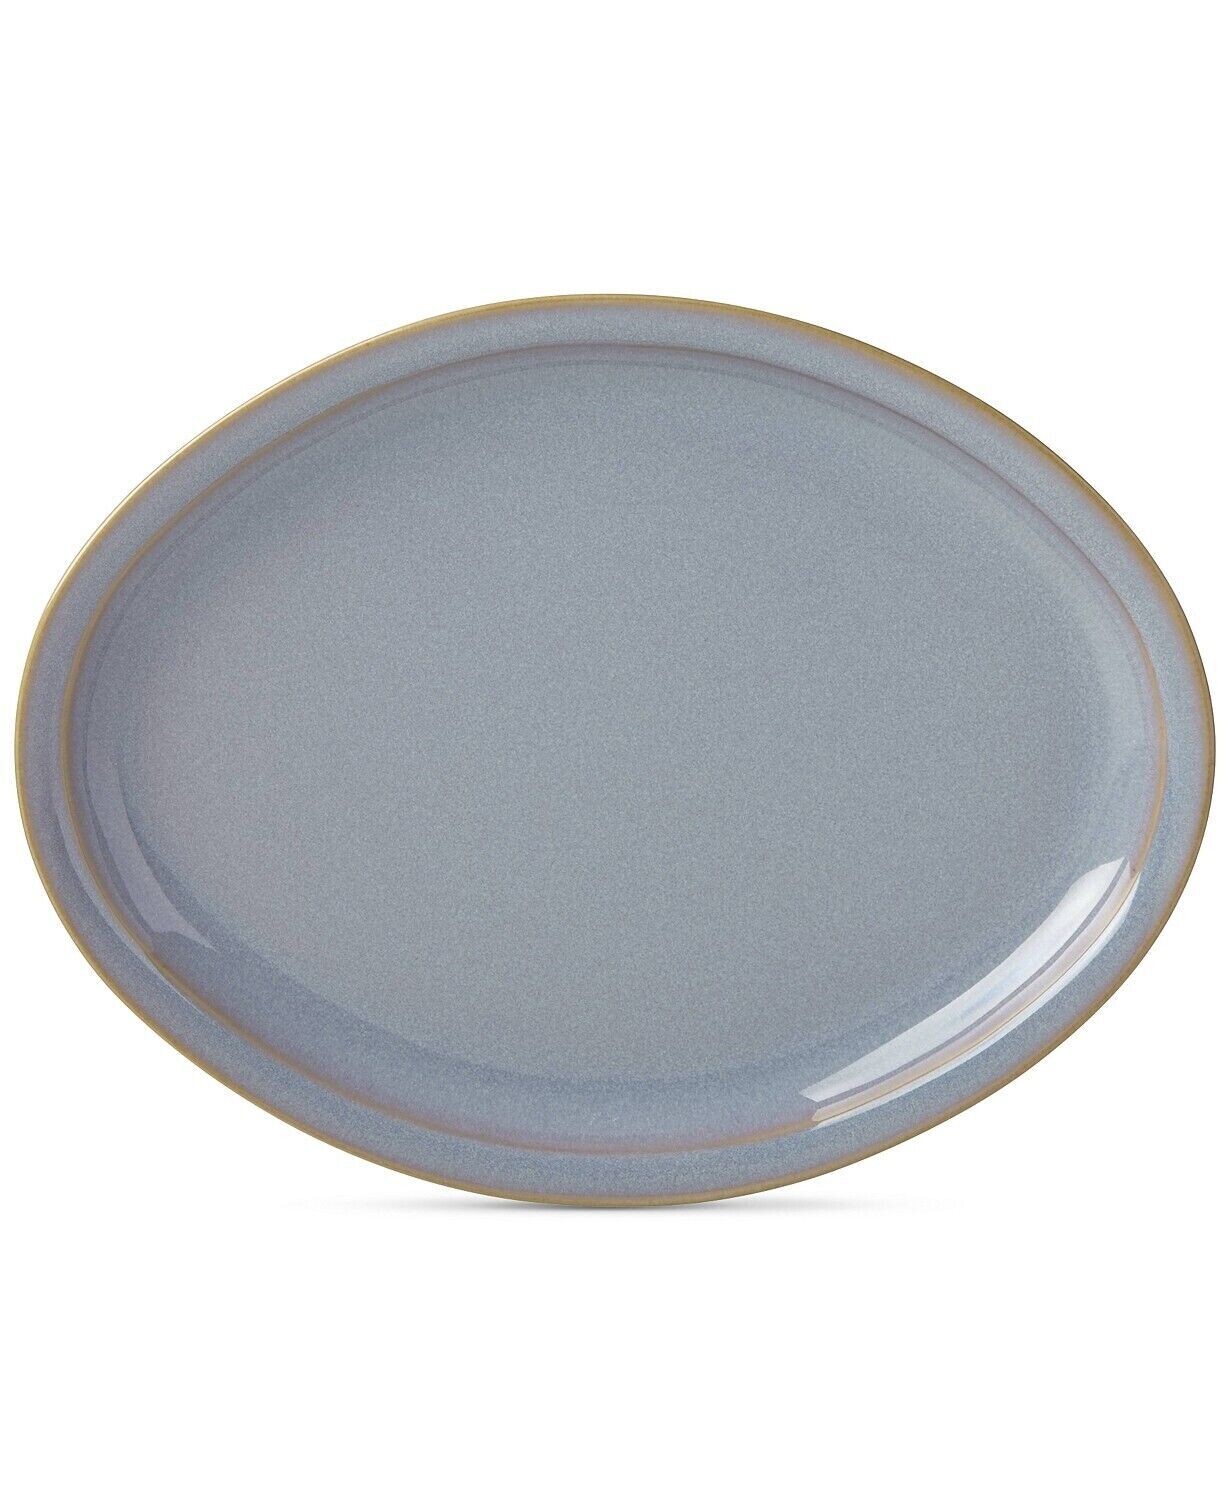 Dansk Haldan 14" Oval Serving Platter